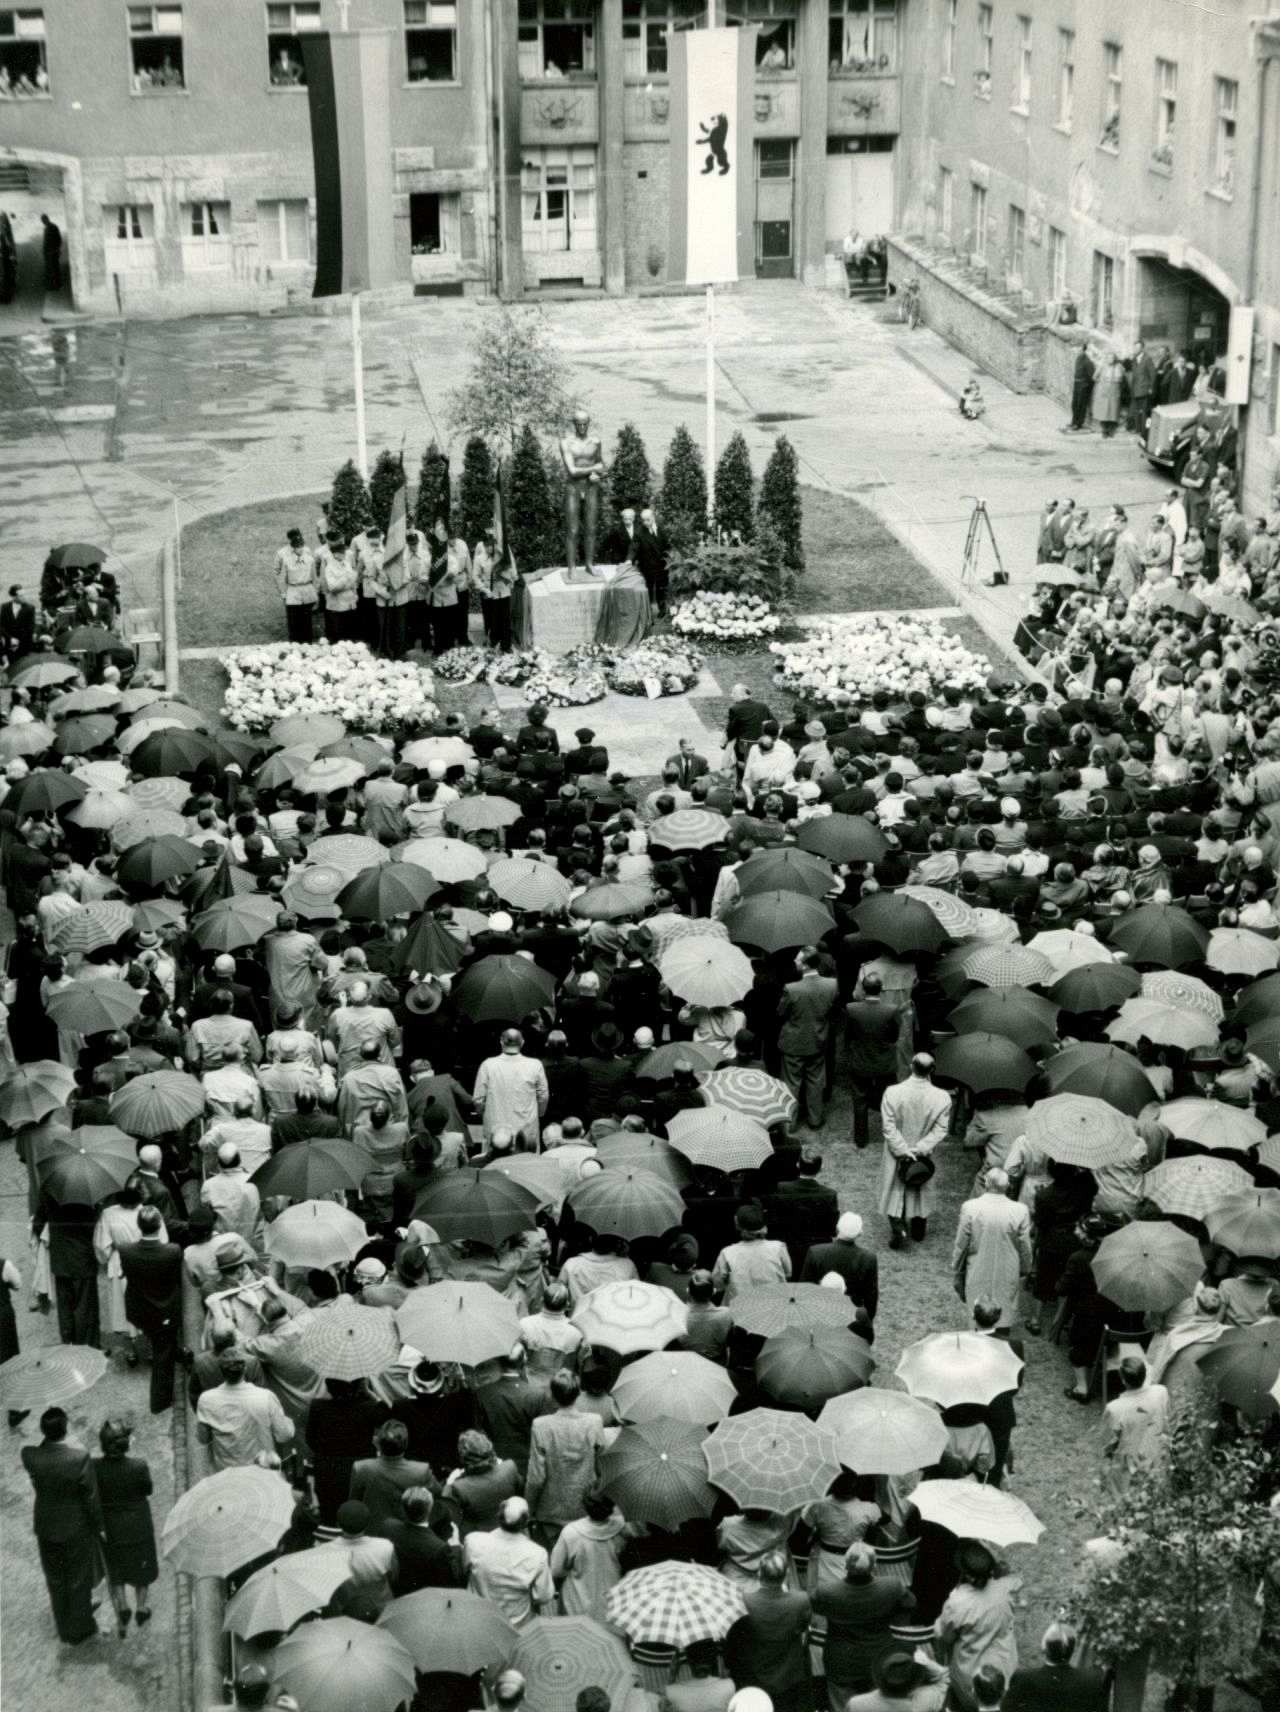 Menschenmenge vielfach mit Regenschirmen vor dem enthüllten Denkmal für die Opfer des 20. Juli 1944 im Hof des ehemaligen Reichskriegsministeriums im Berliner Bendlerblock.